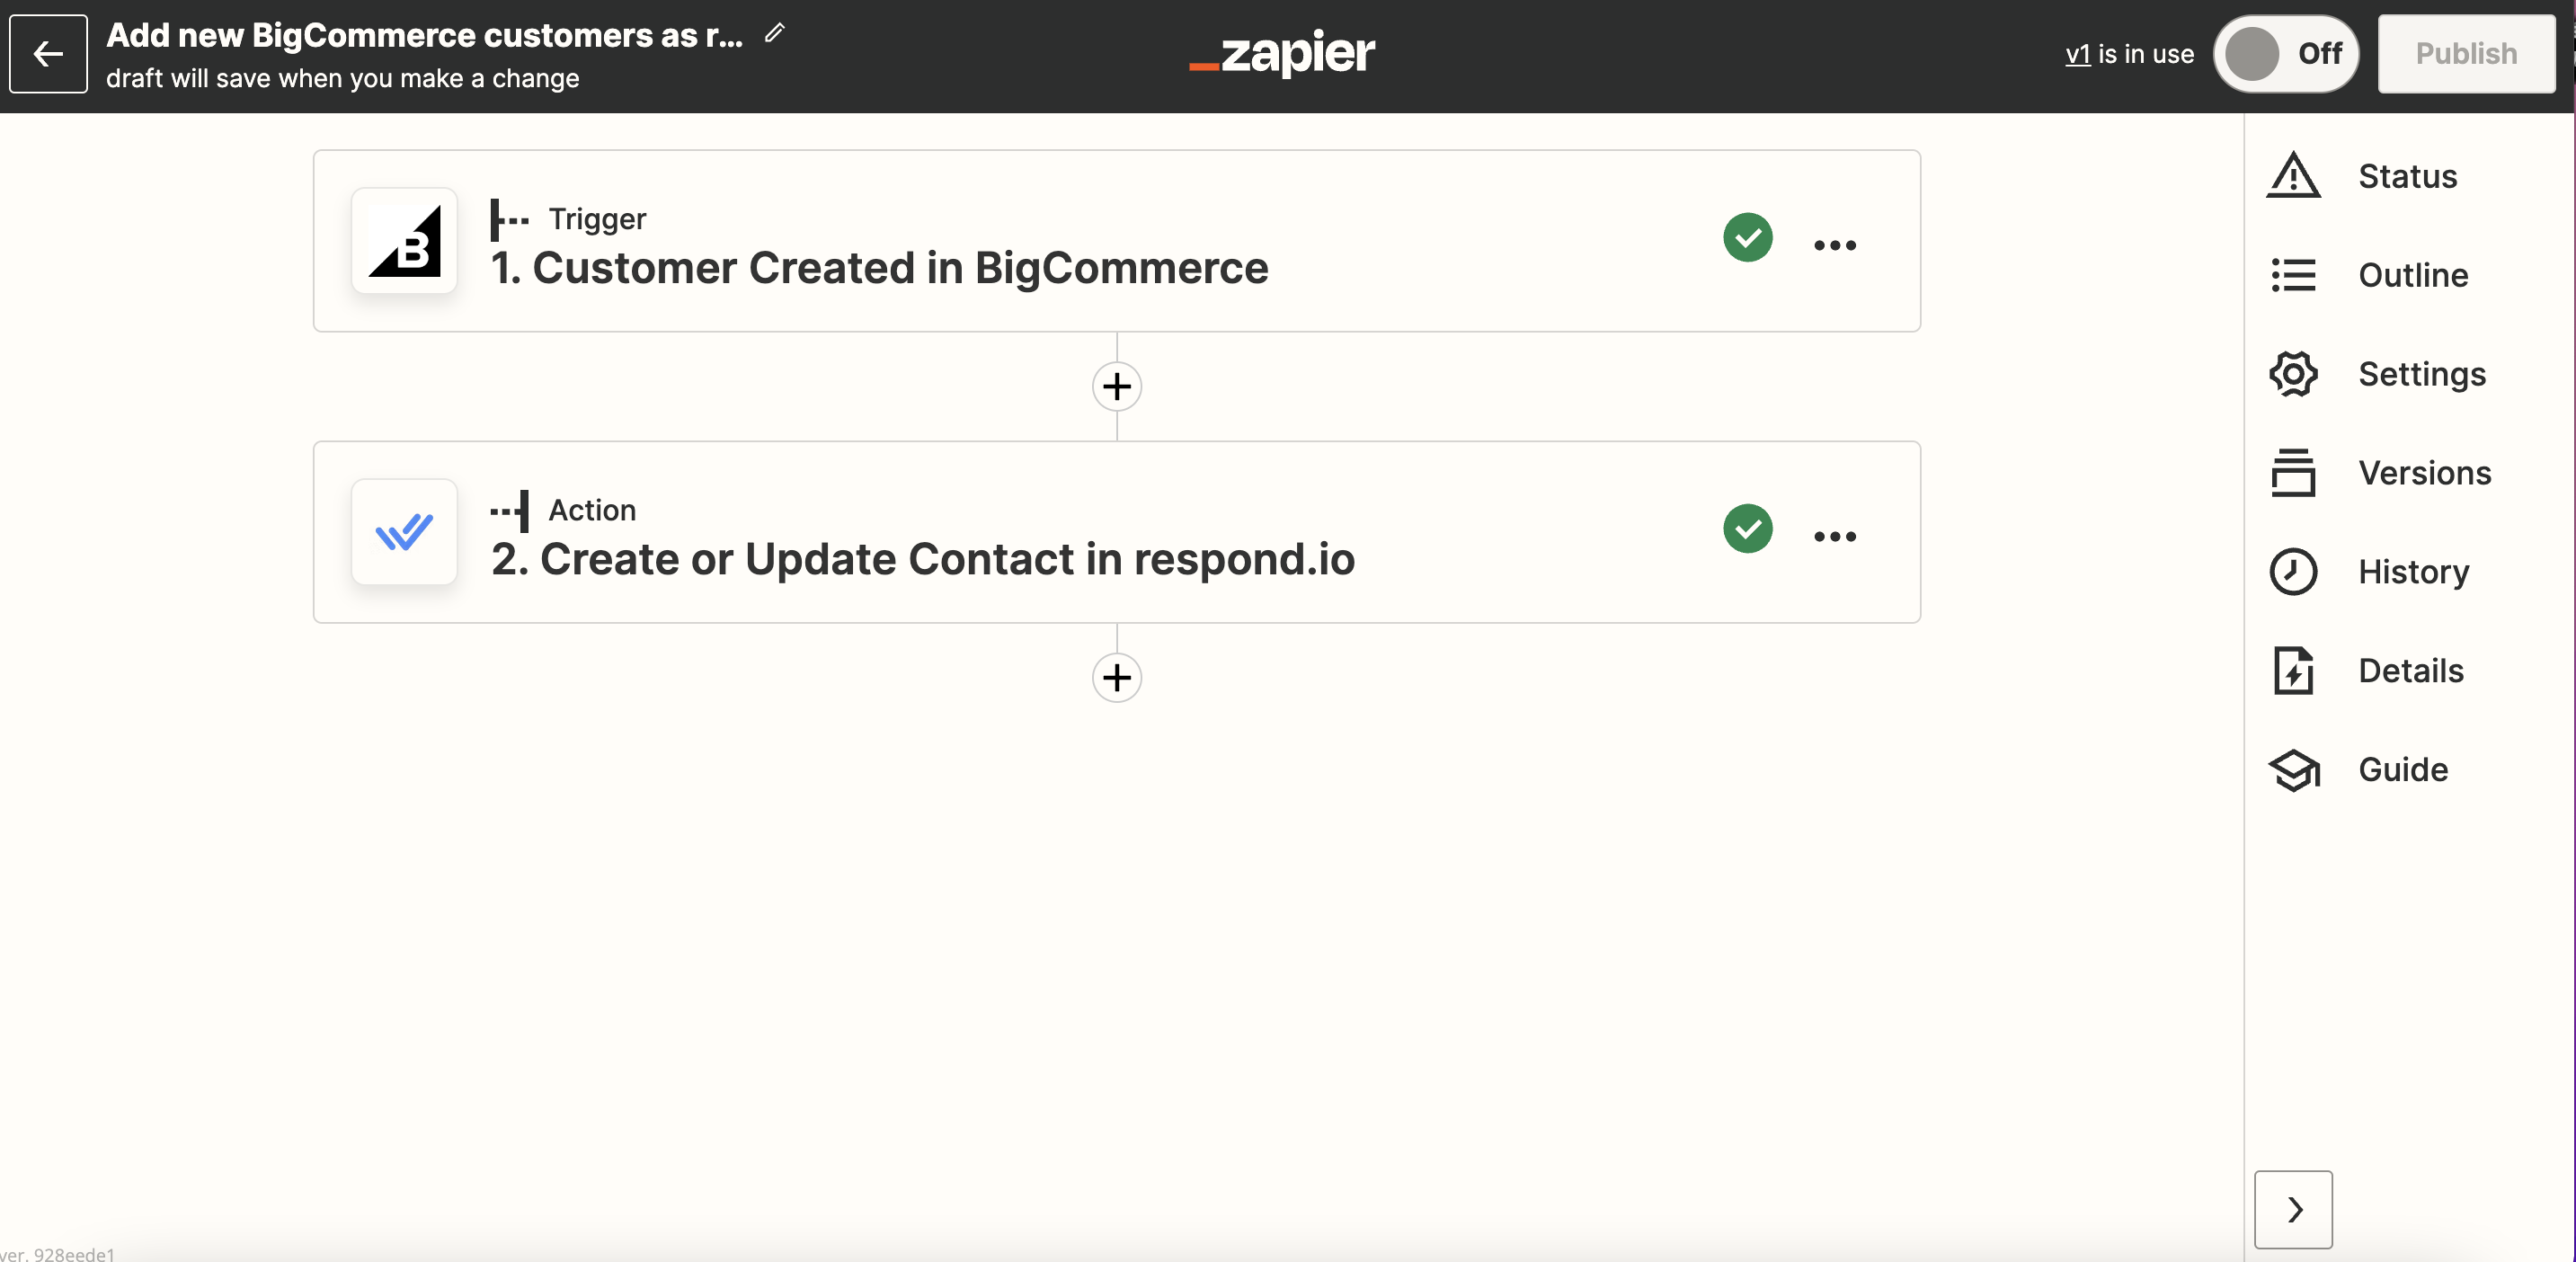 لقطة شاشة لقالب Zapier لإضافة جهات الاتصال كعملاء